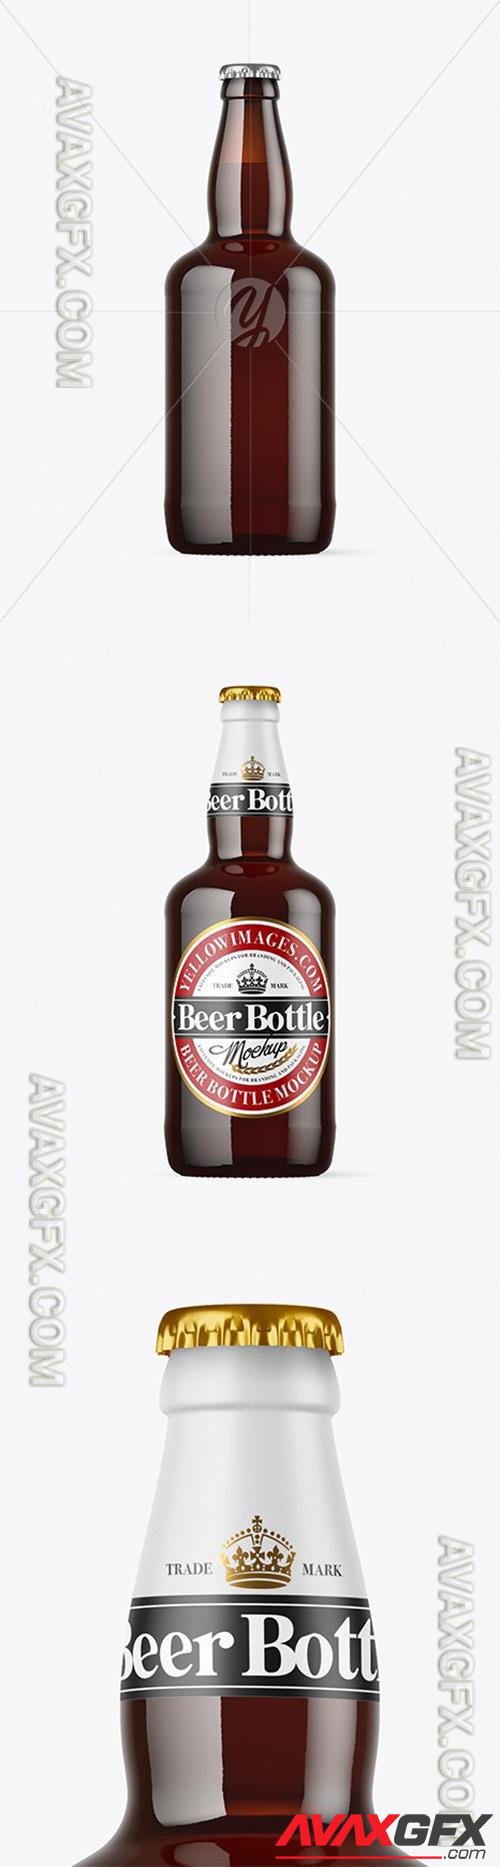 Dark Amber Glass Beer Bottle Mockup 72833 TIF